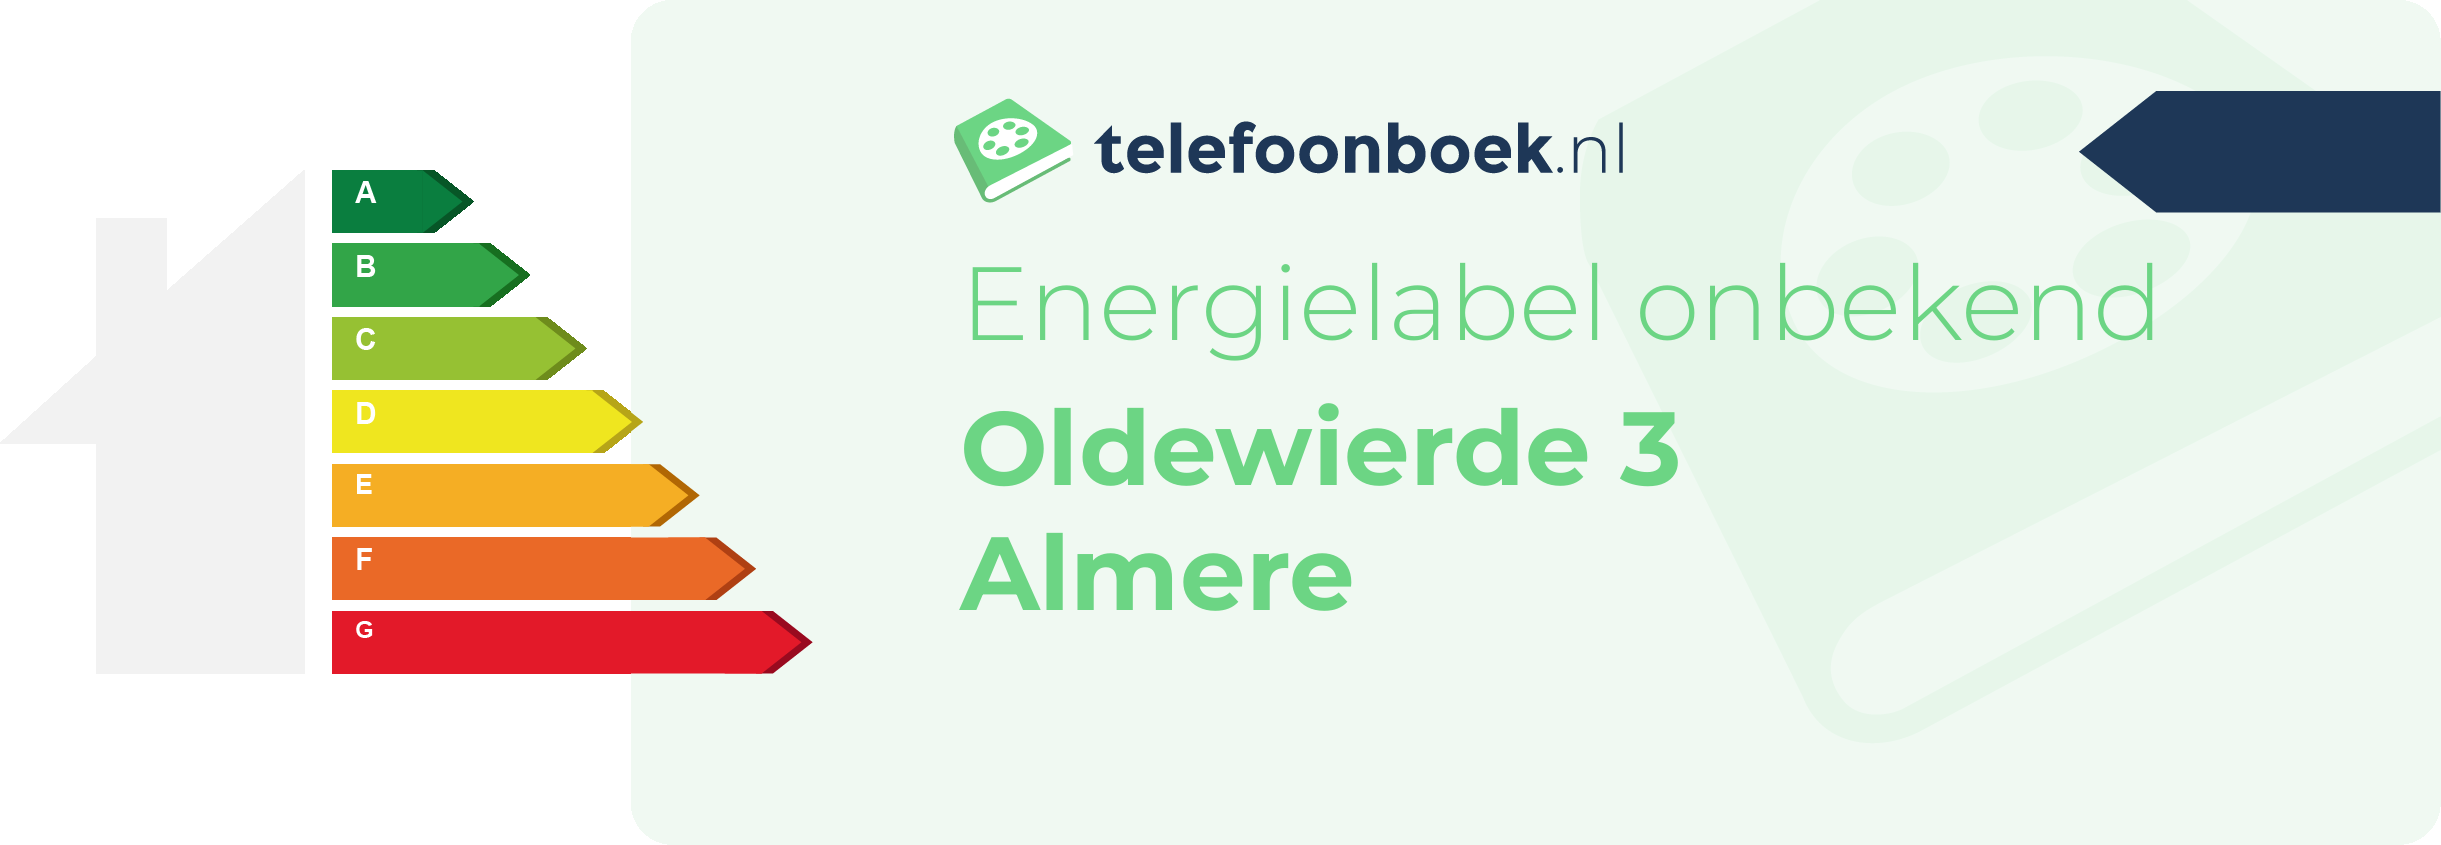 Energielabel Oldewierde 3 Almere